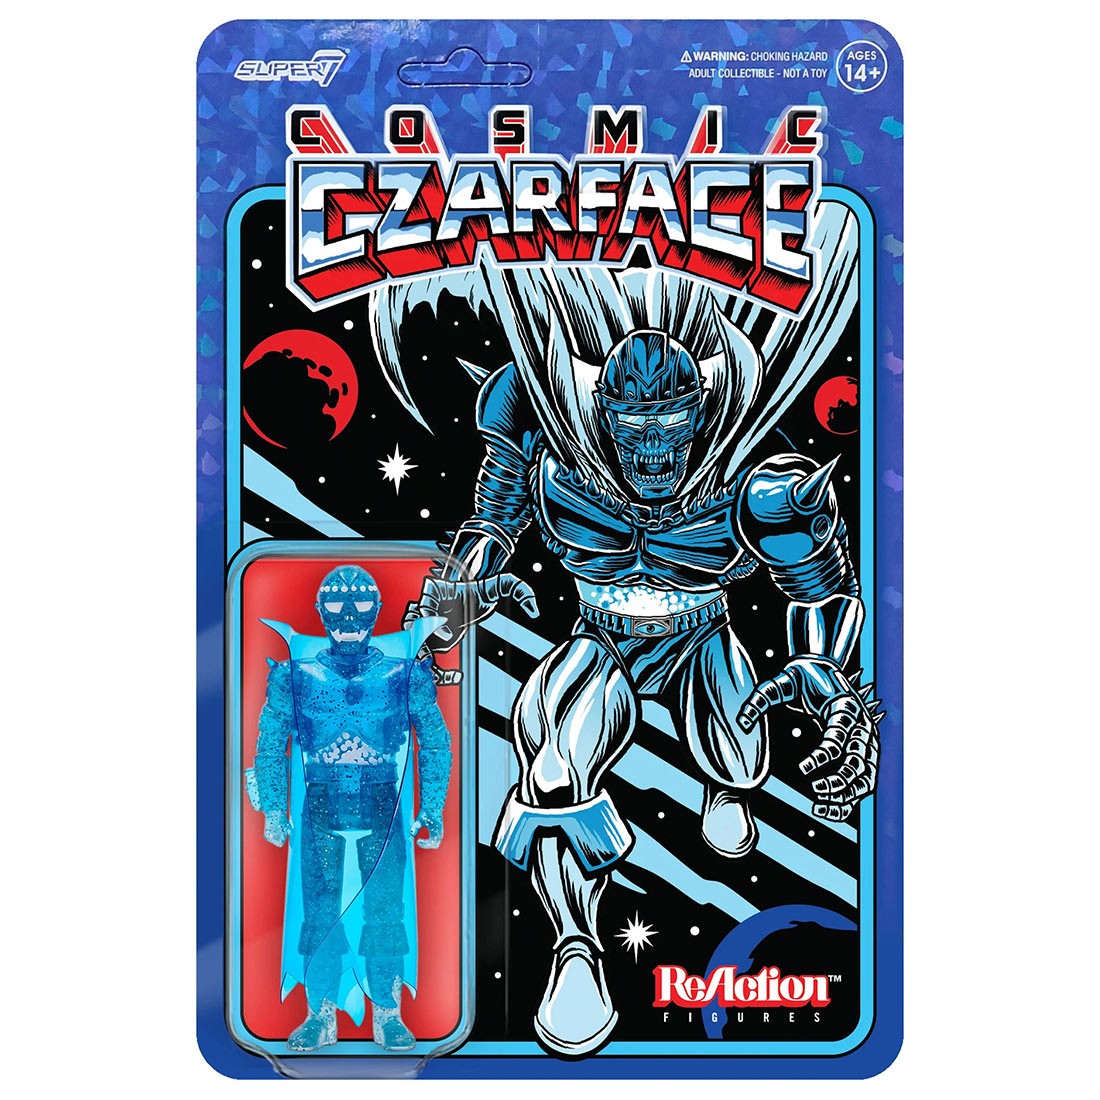 Super7 Czarface Cosmic Czarface ReAction Figure (blue)